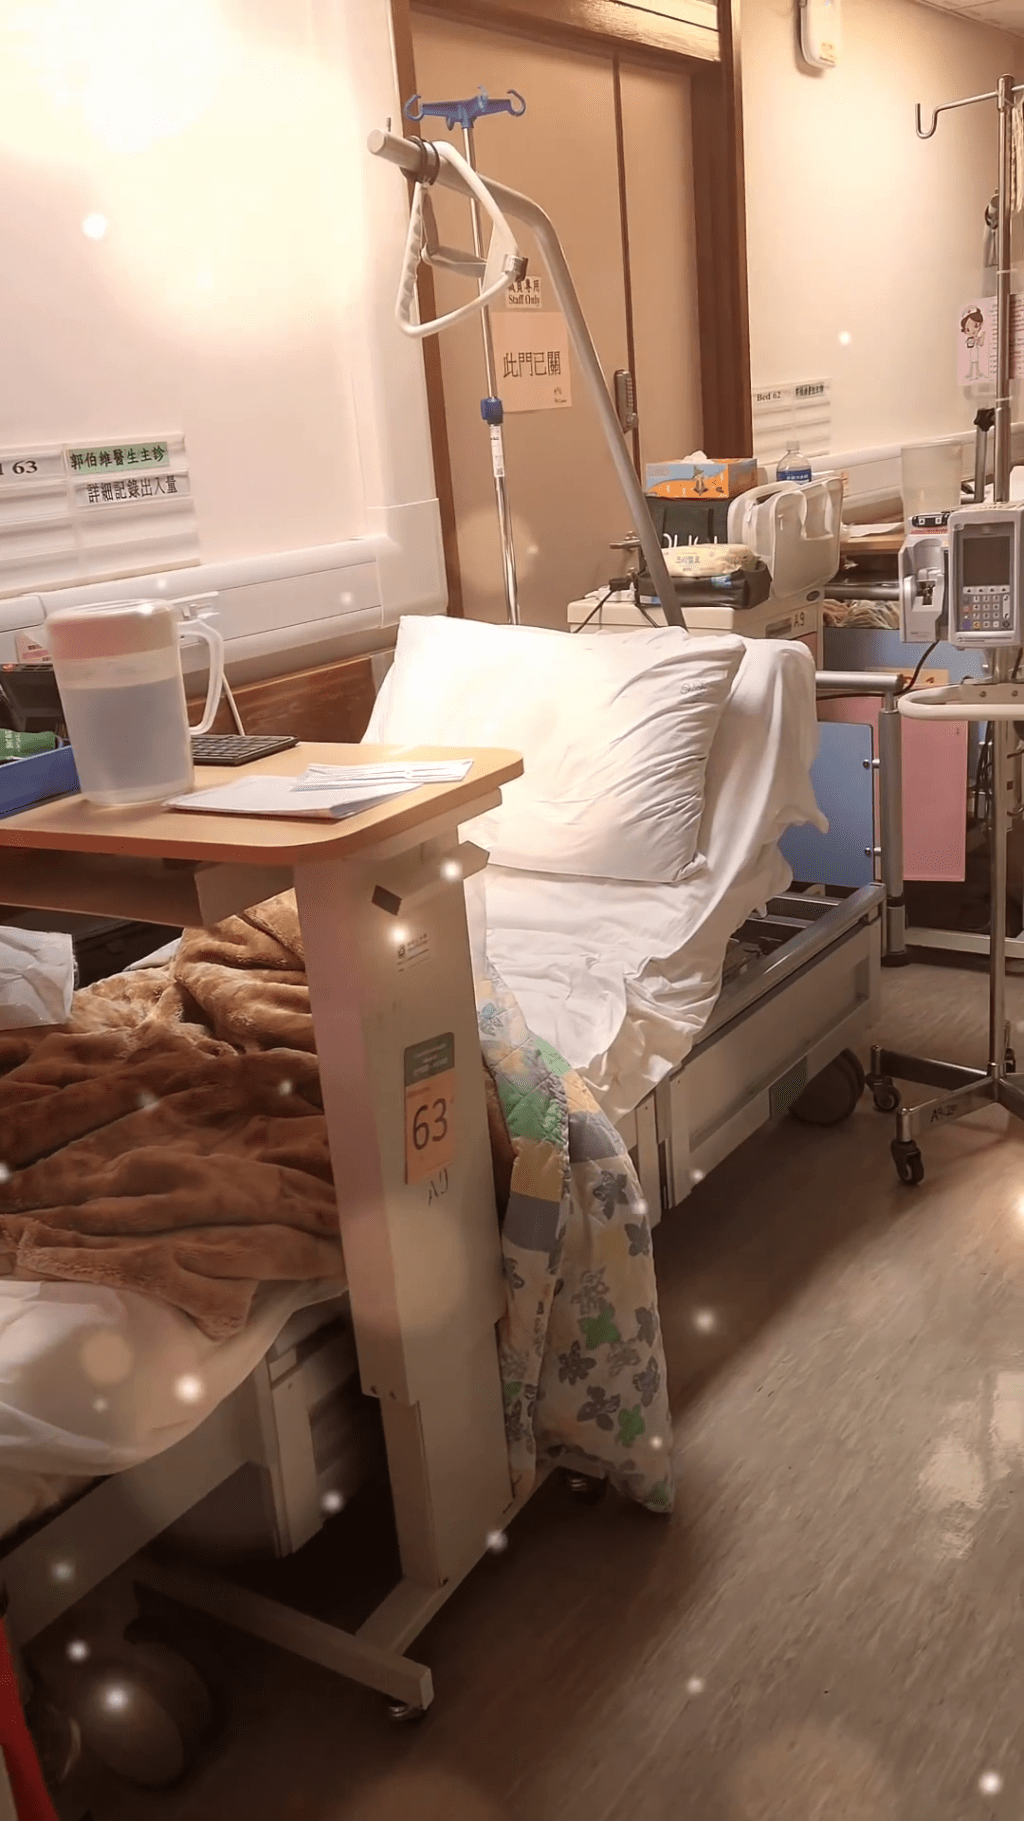 文颂男获安排的病床疑似在走廊位置。